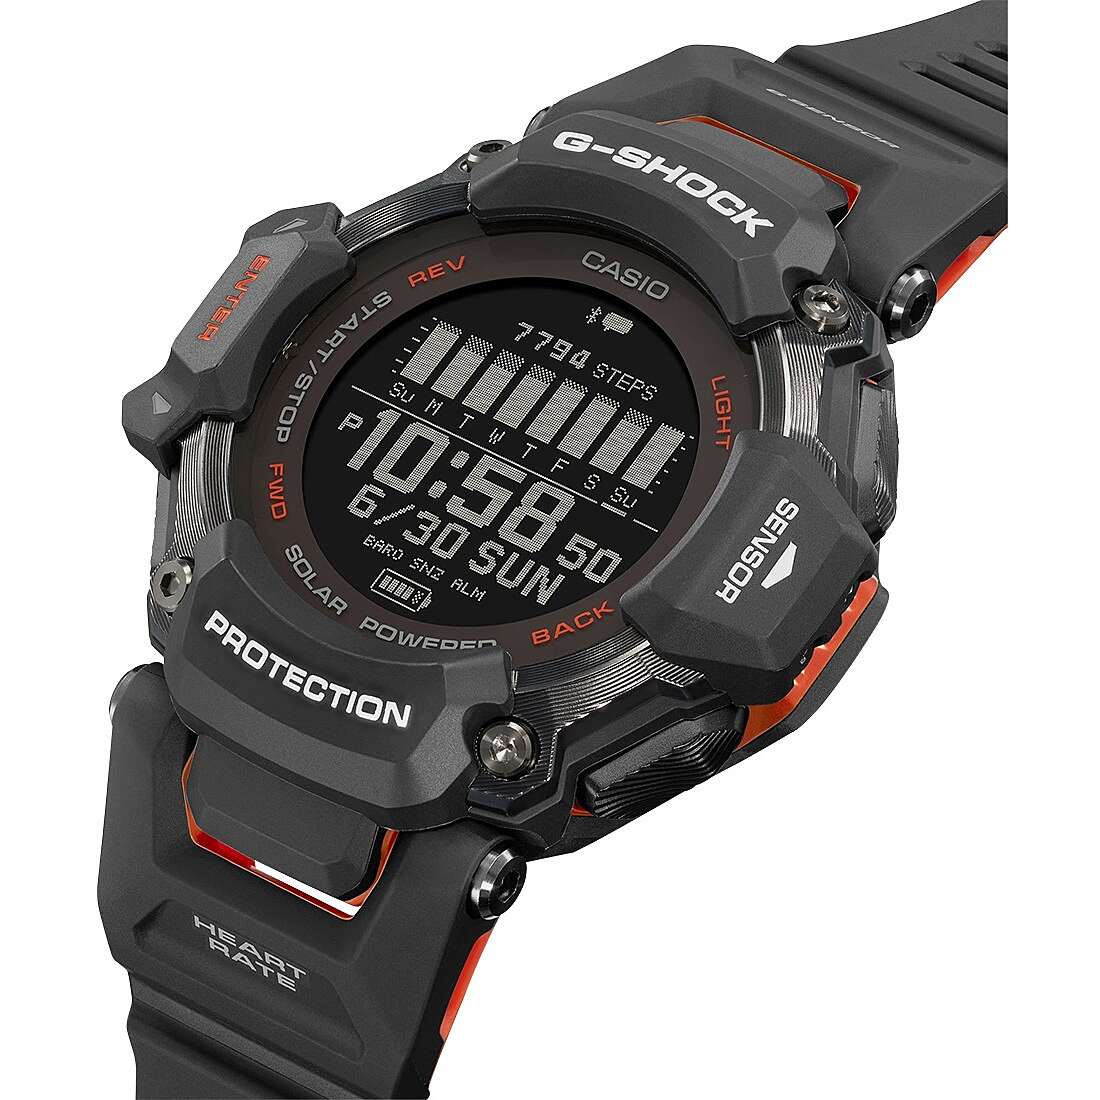 Uhr Smartwatch mann G-Shock GBD-H2000-1AER